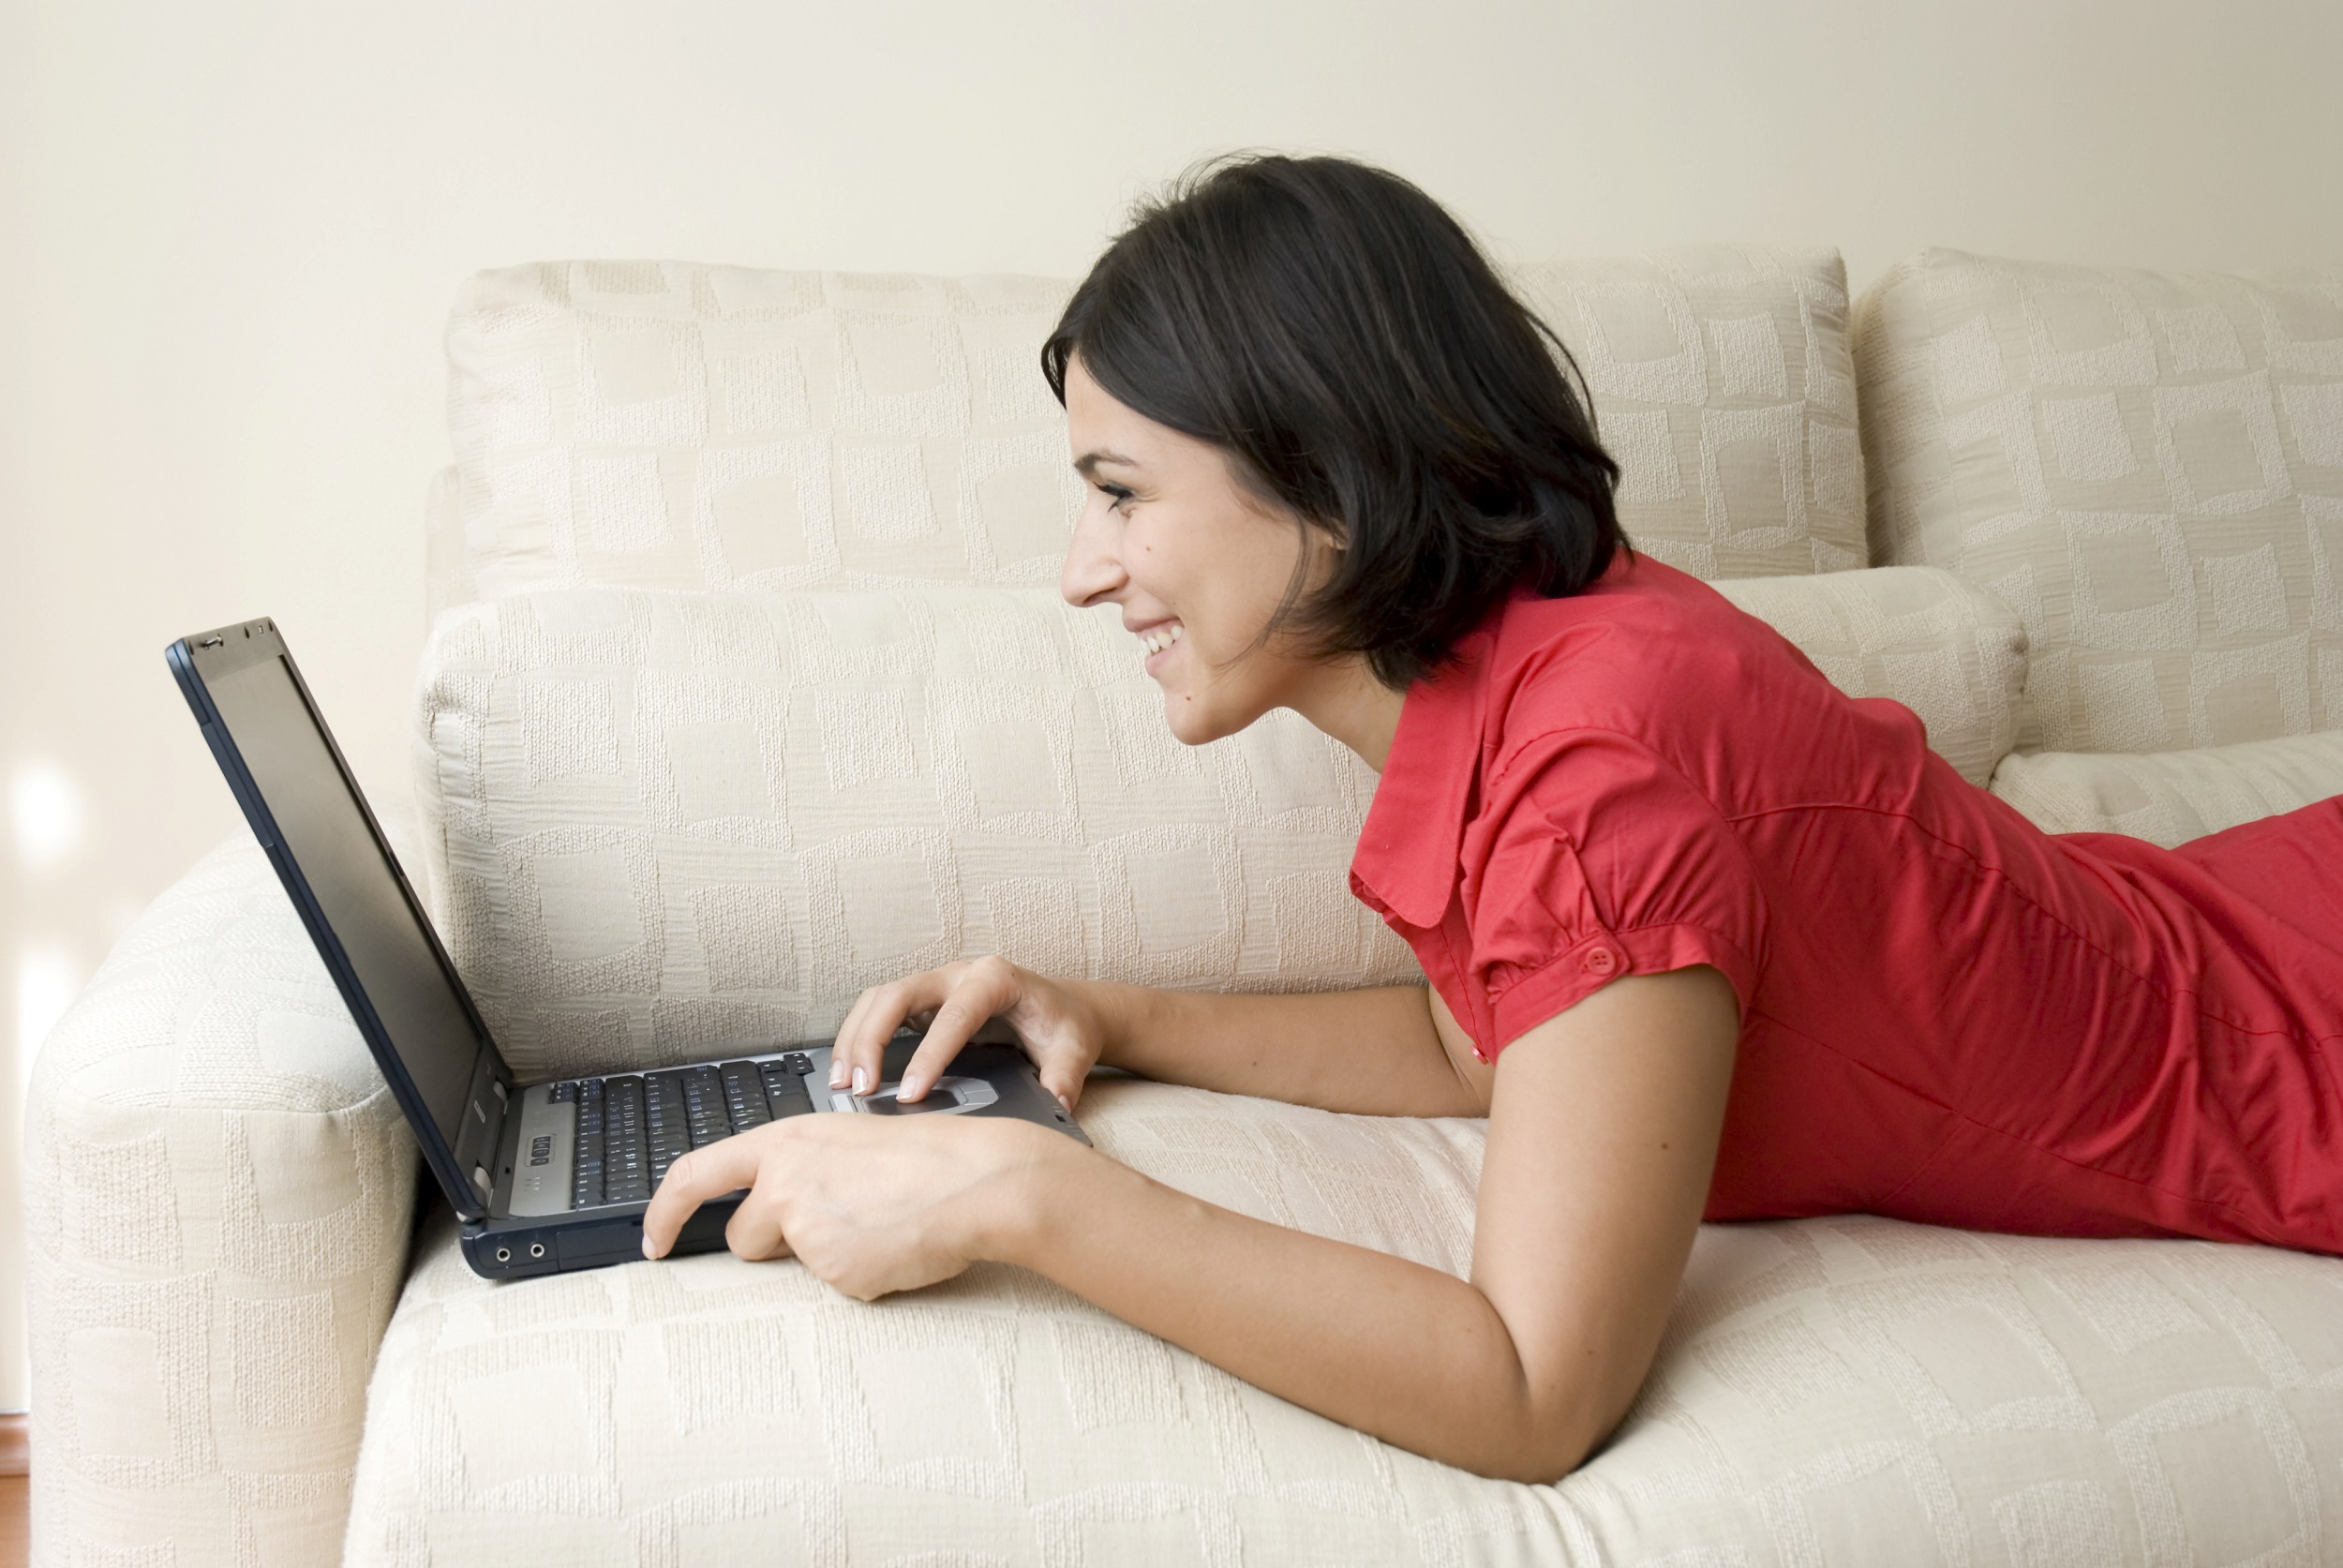 Foto van een vrouw die op bed ligt met haar laptop